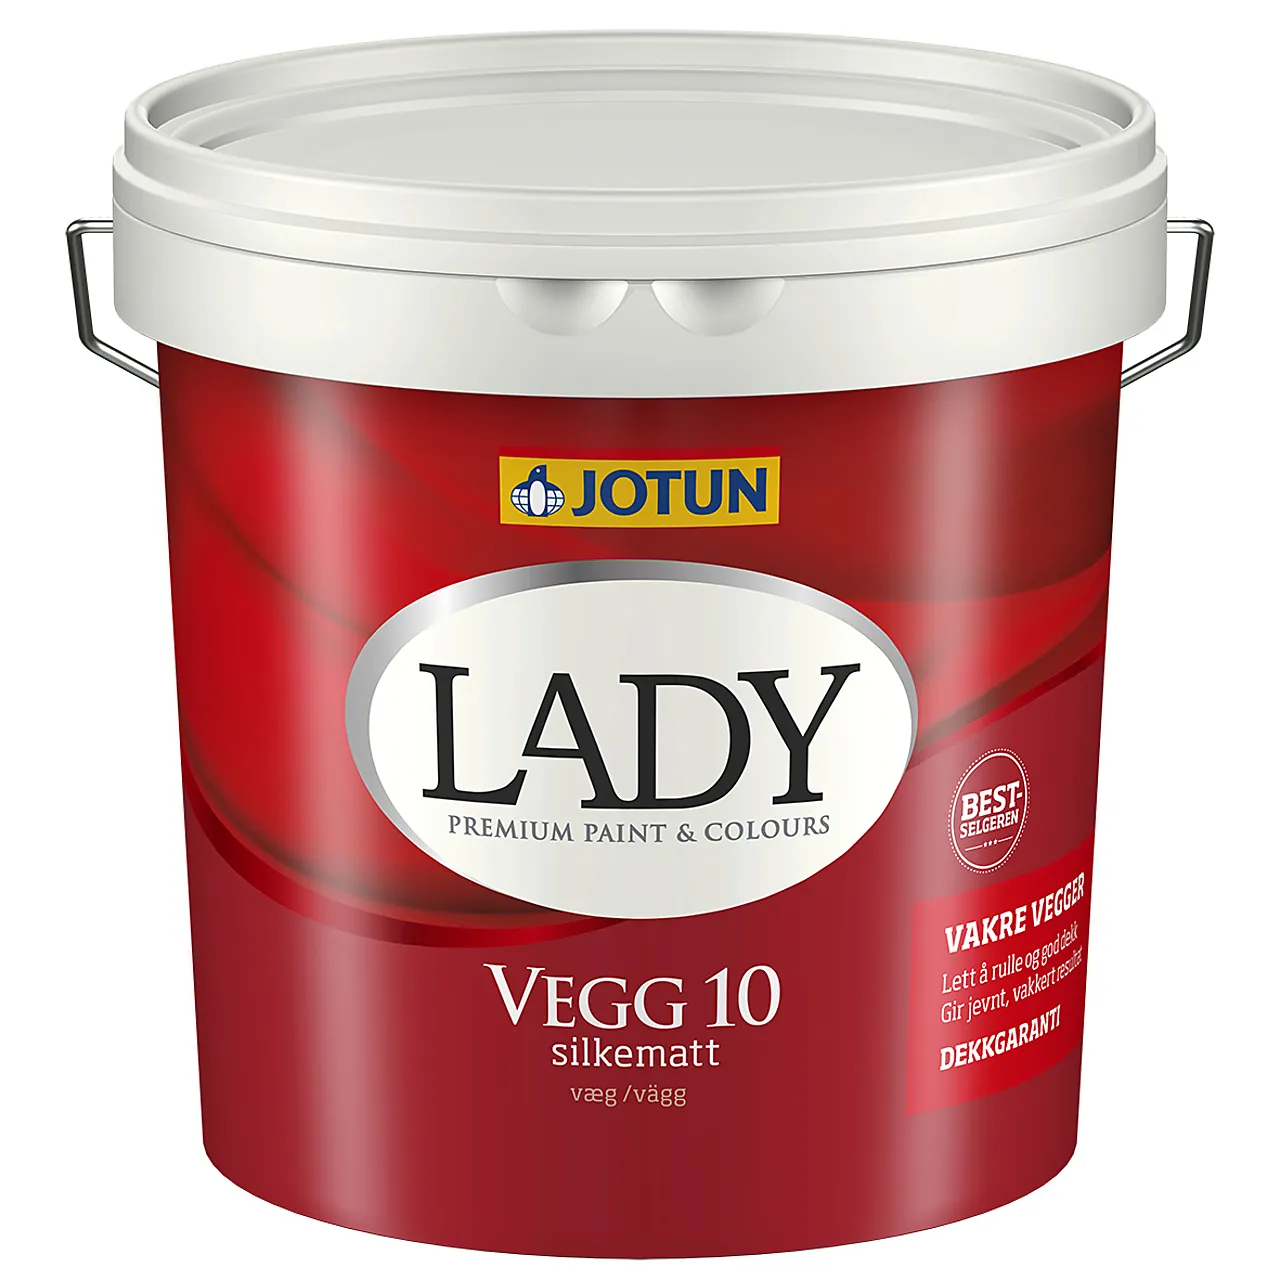 Lady Vegg 10 a-base 2,7 liter